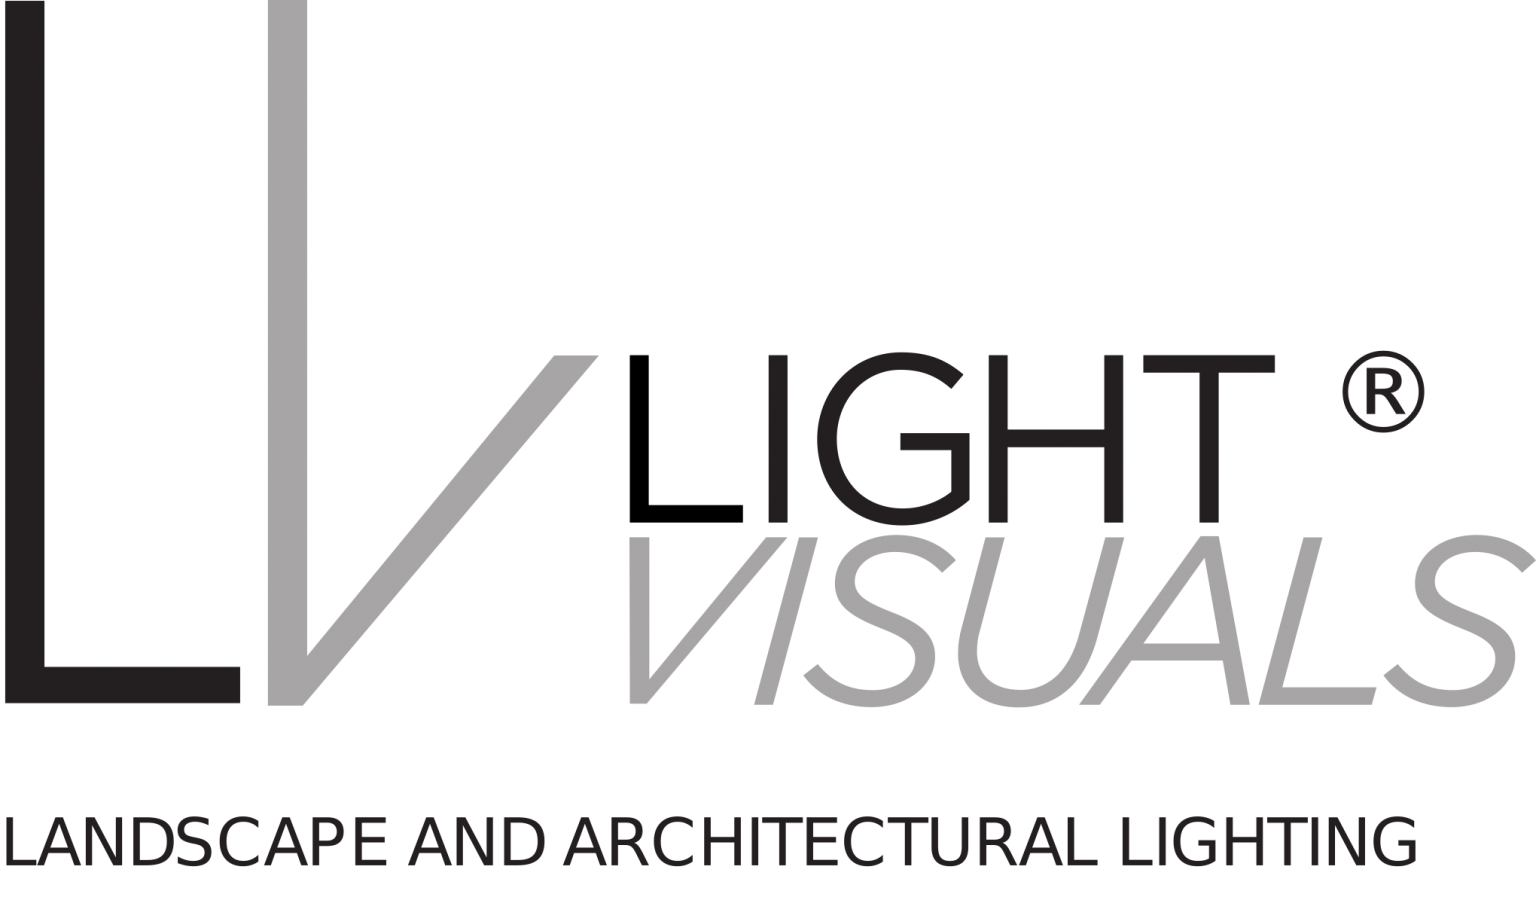 Light Visuals logo